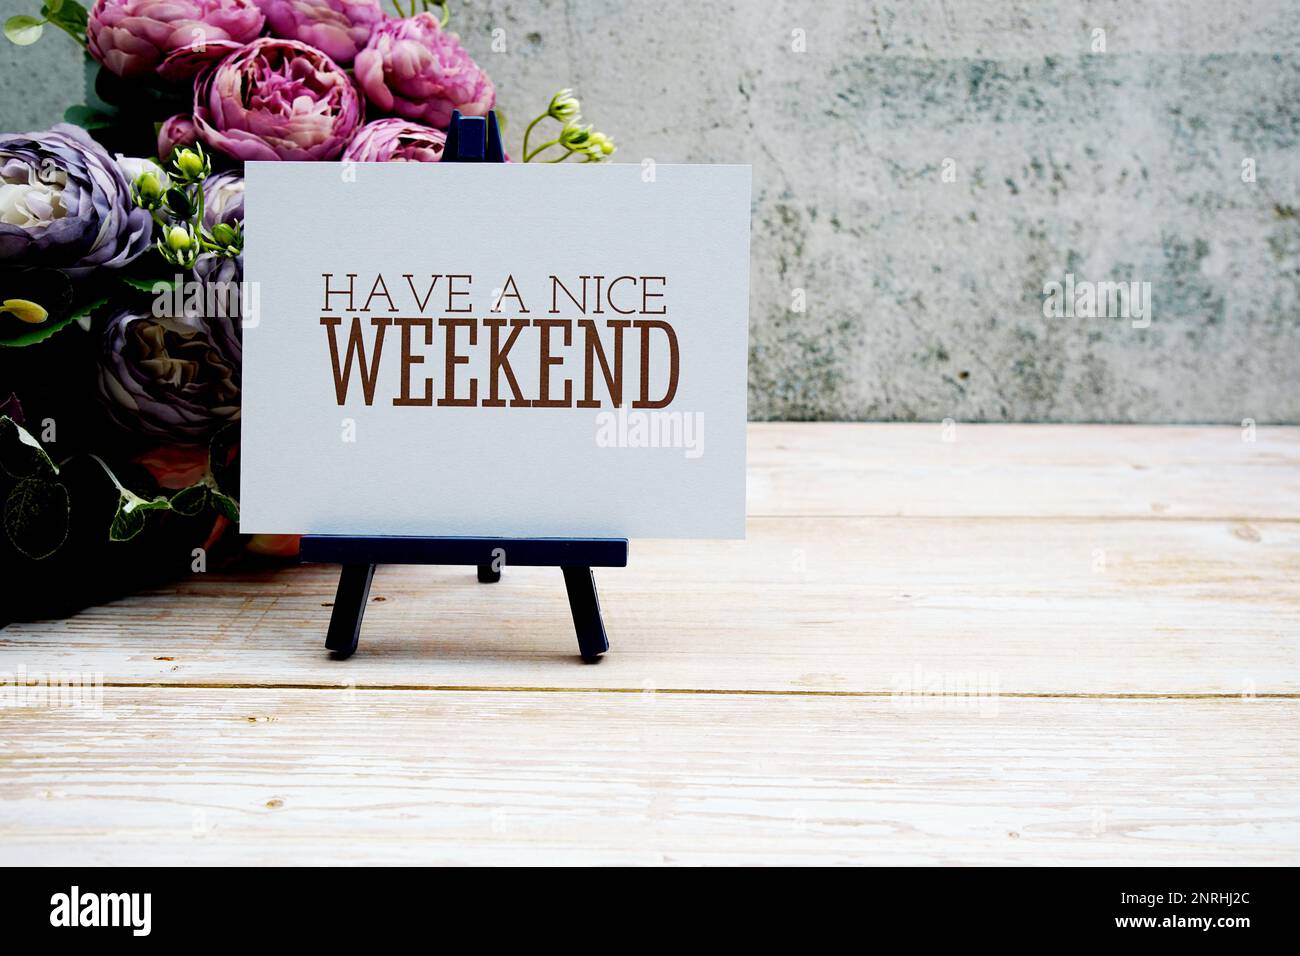 Haben Sie einen schönen Wochenendtext auf Papierkarte mit Blumenstrauß auf Holzhintergrund Stockfoto